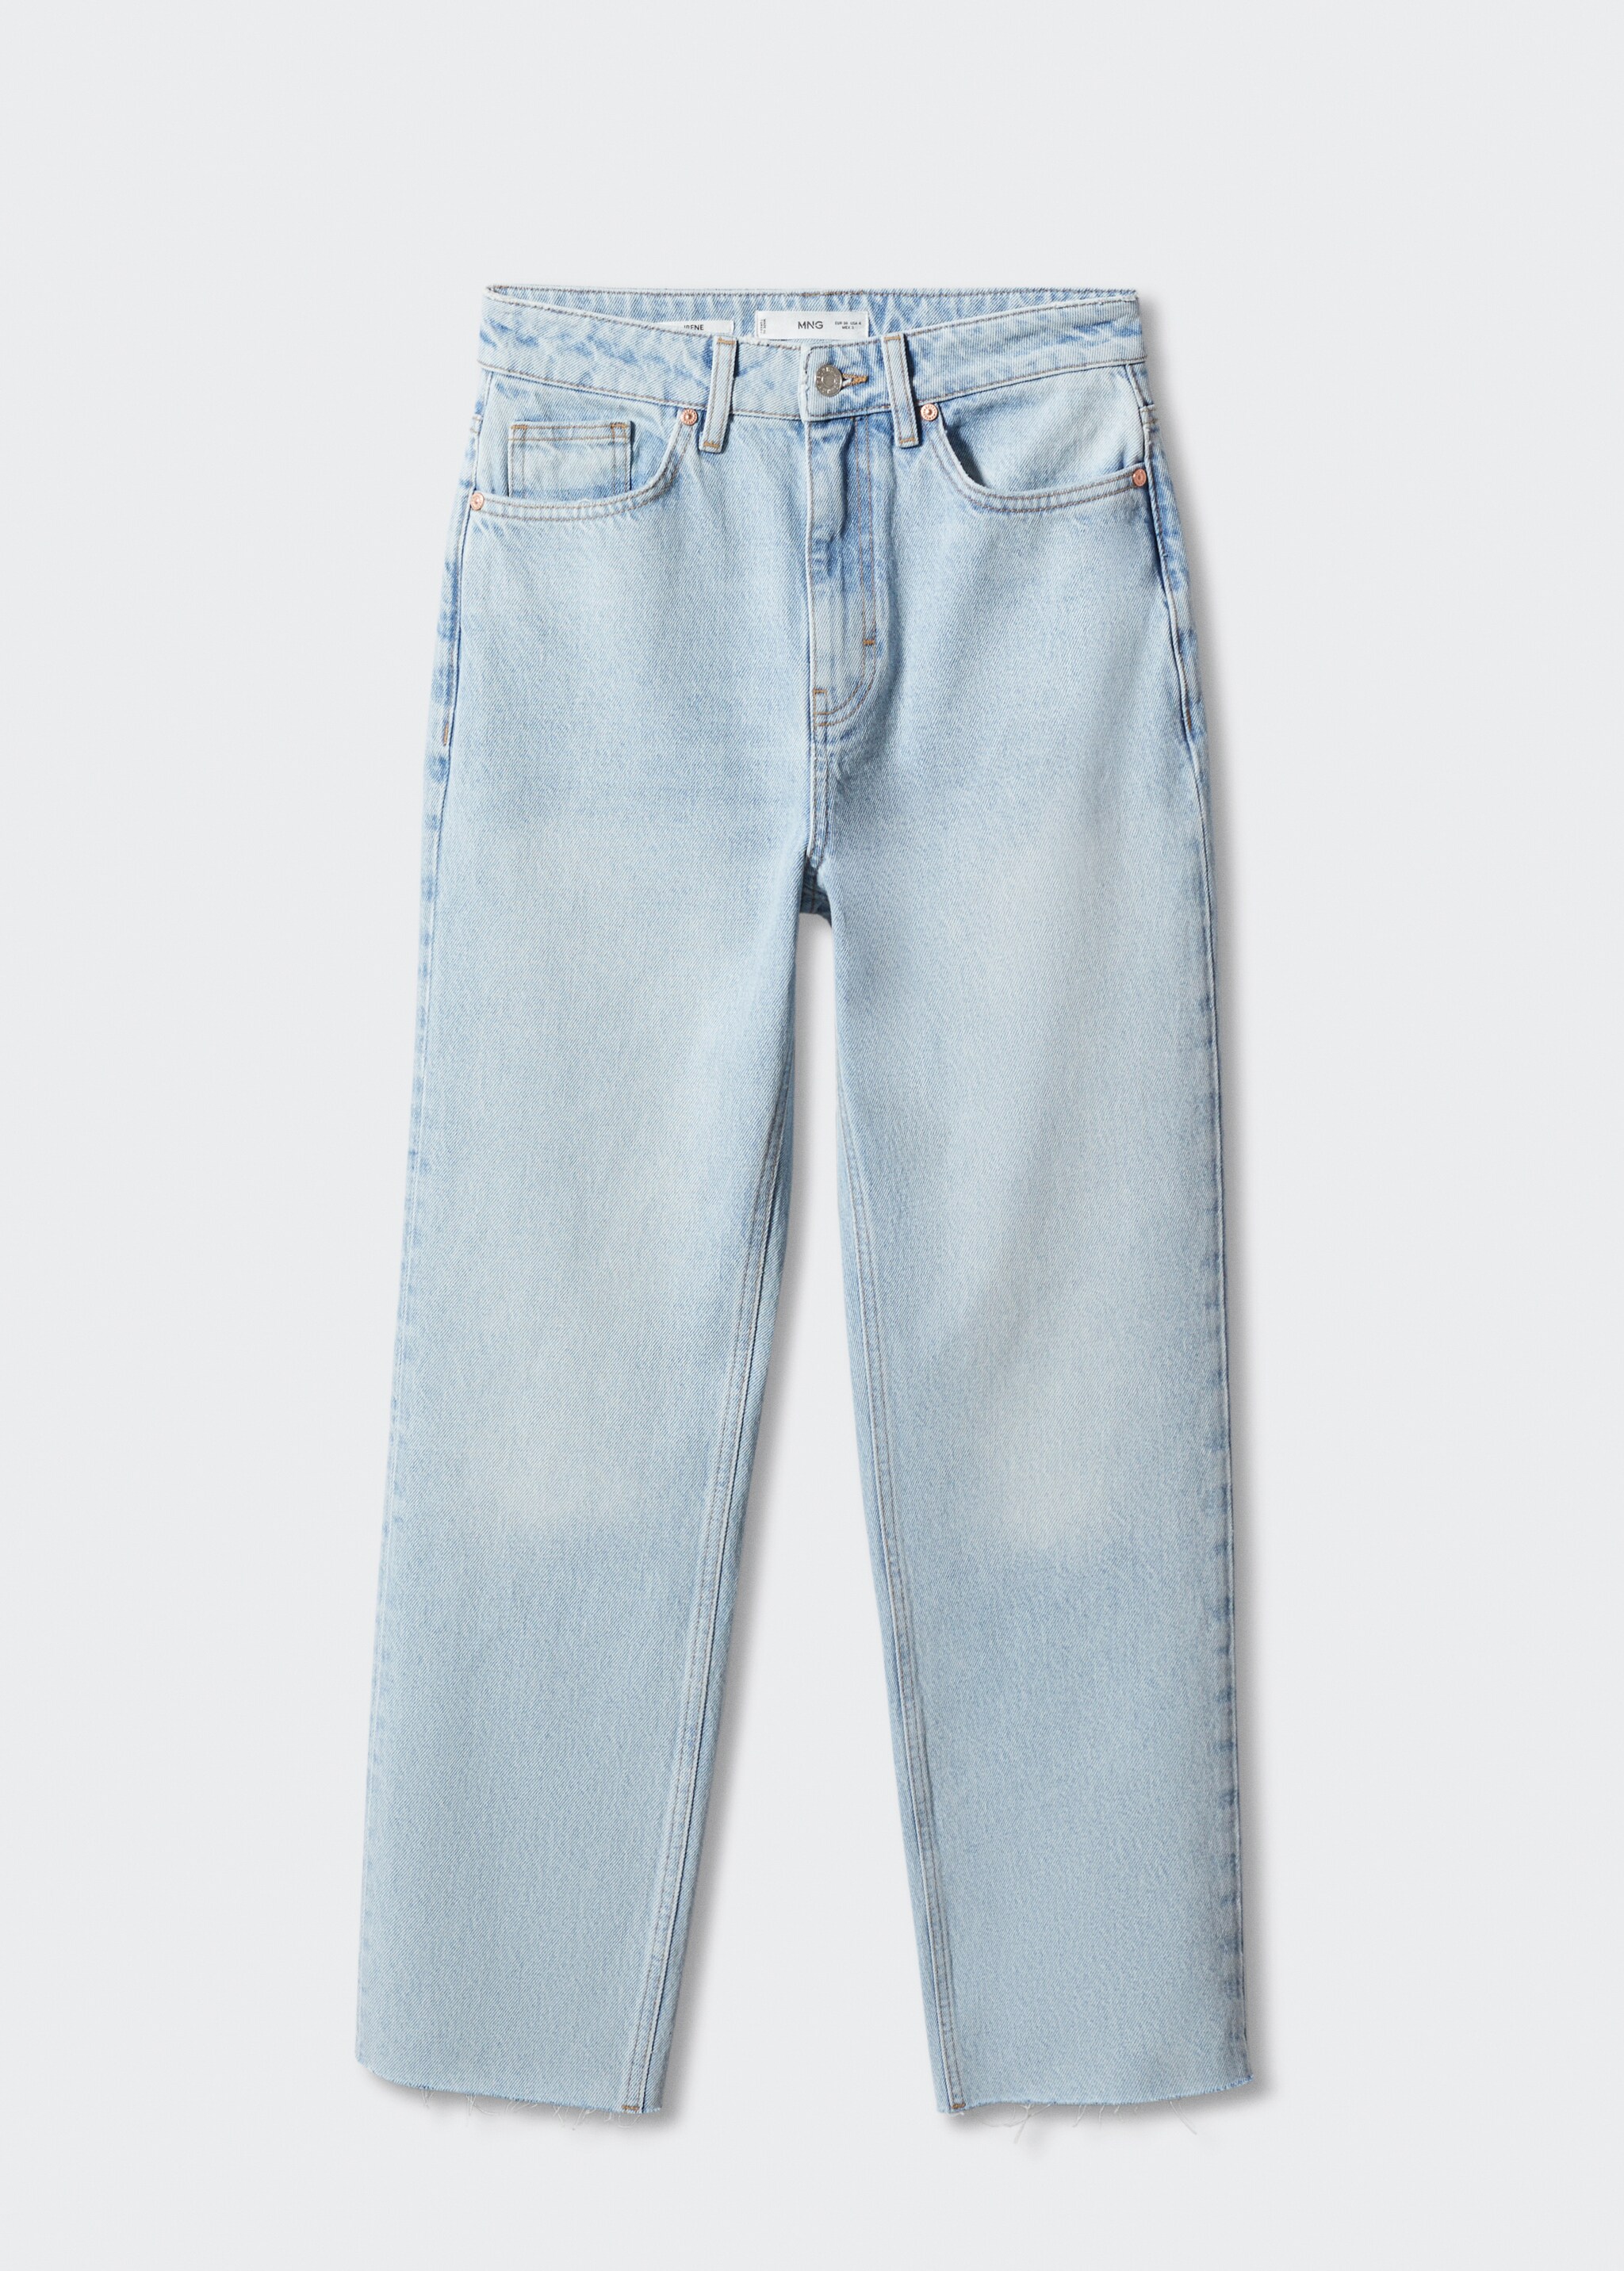 Rovné džíny s vysokým pasem - Zboží bez modelu